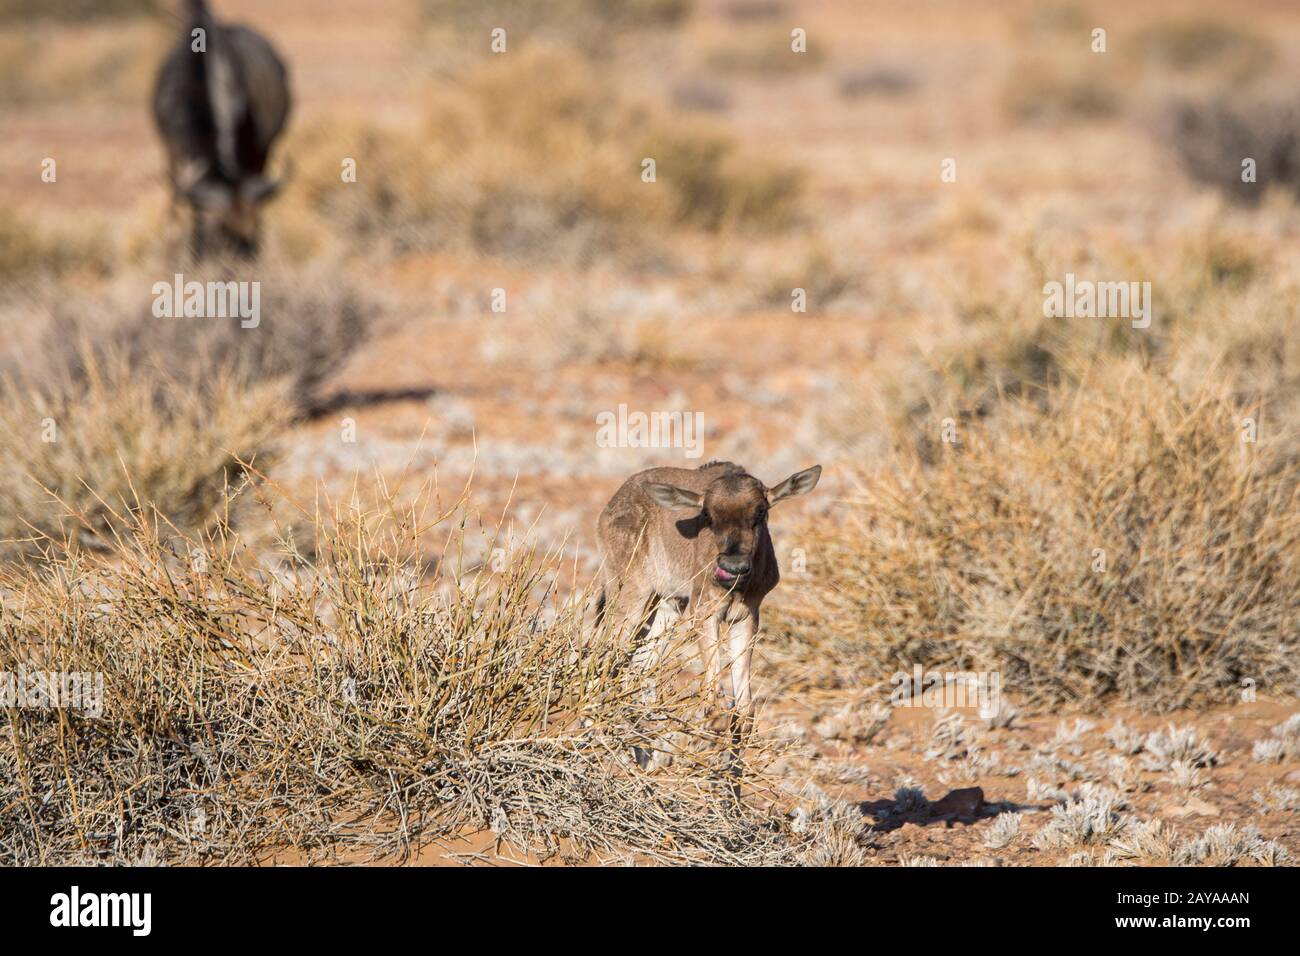 Un bébé nouvellement né Wildebeest ou Gnu près du canyon Sesriem dans la région de Sossusvlei, parc national du Namib-Naukluft en Namibie. Banque D'Images